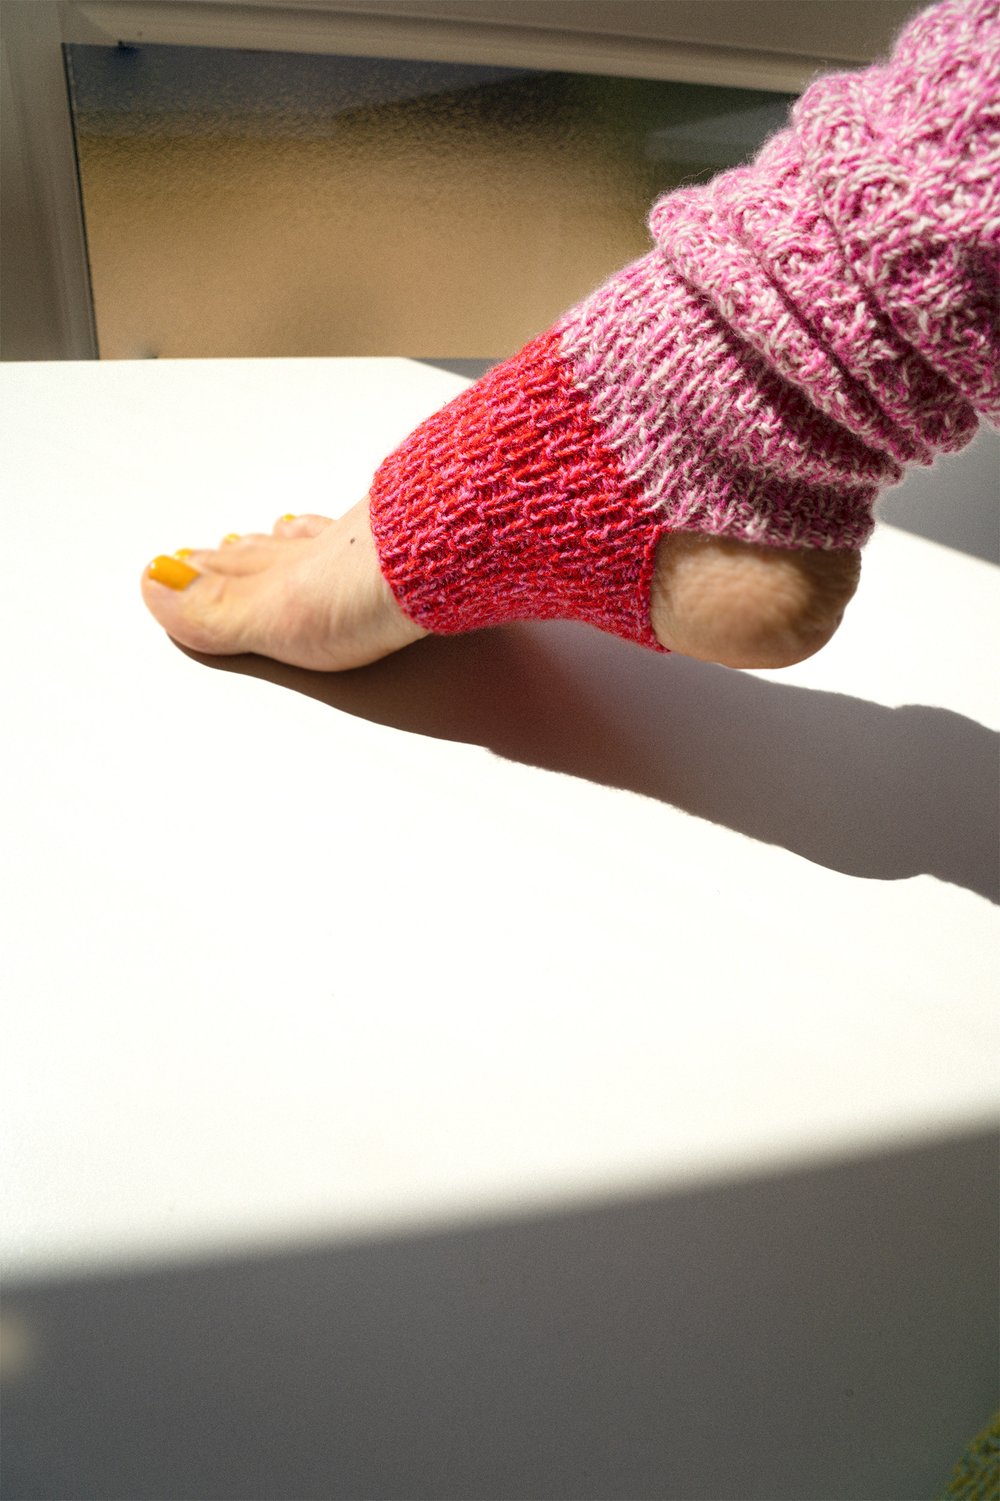 Midnight yoga club socks knitting pattern — ARA STELLA